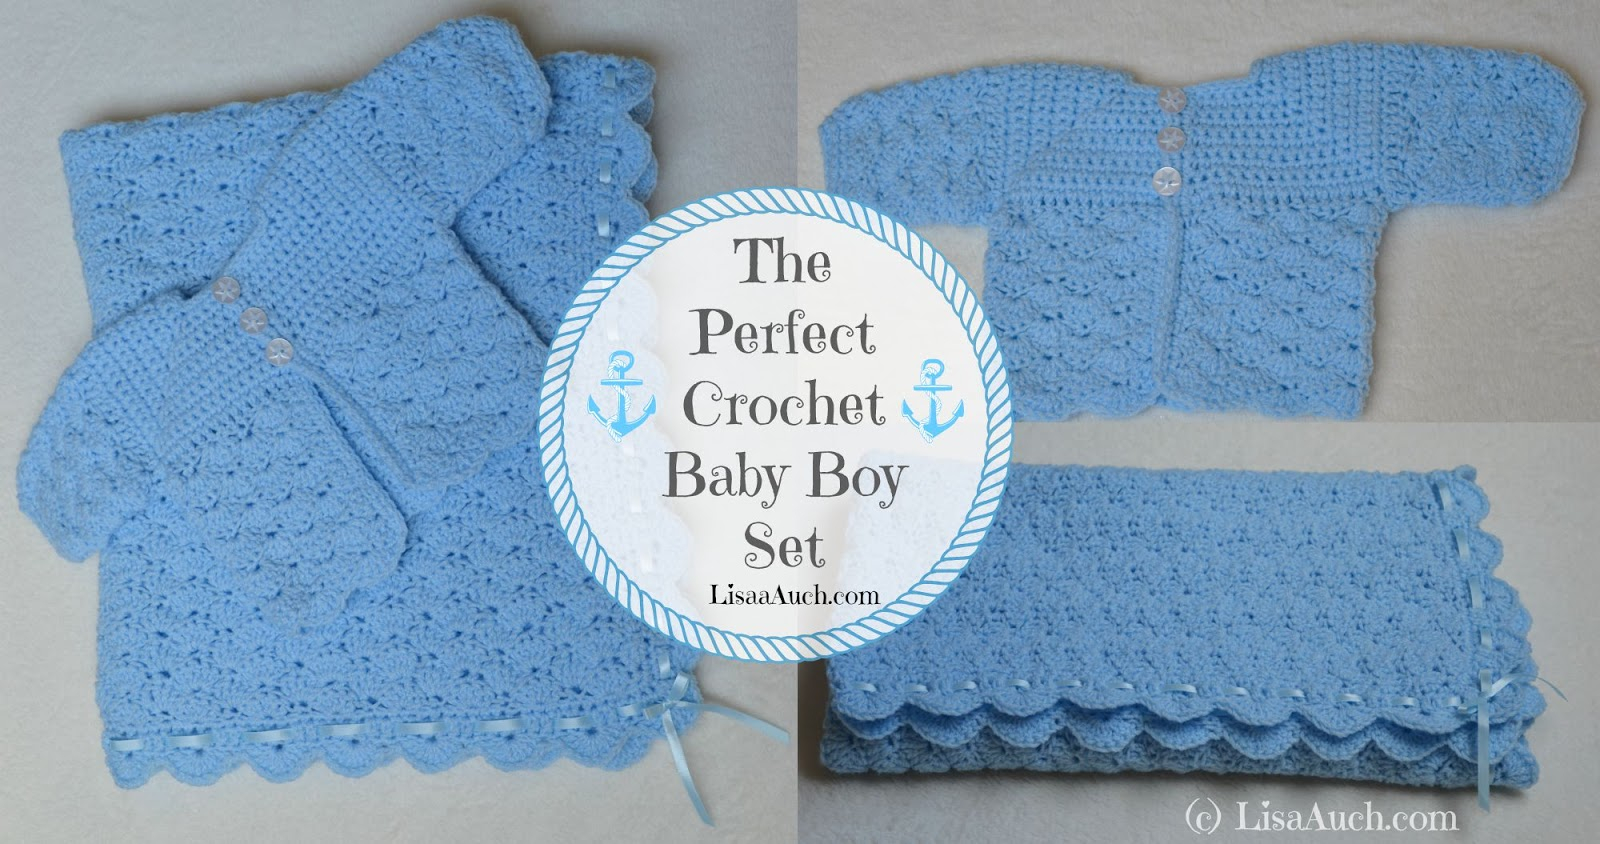 Crochet Baby Boy Sweater Pattern Free Free Crochet Patterns And Designs Lisaauch Free Crochet Patterns